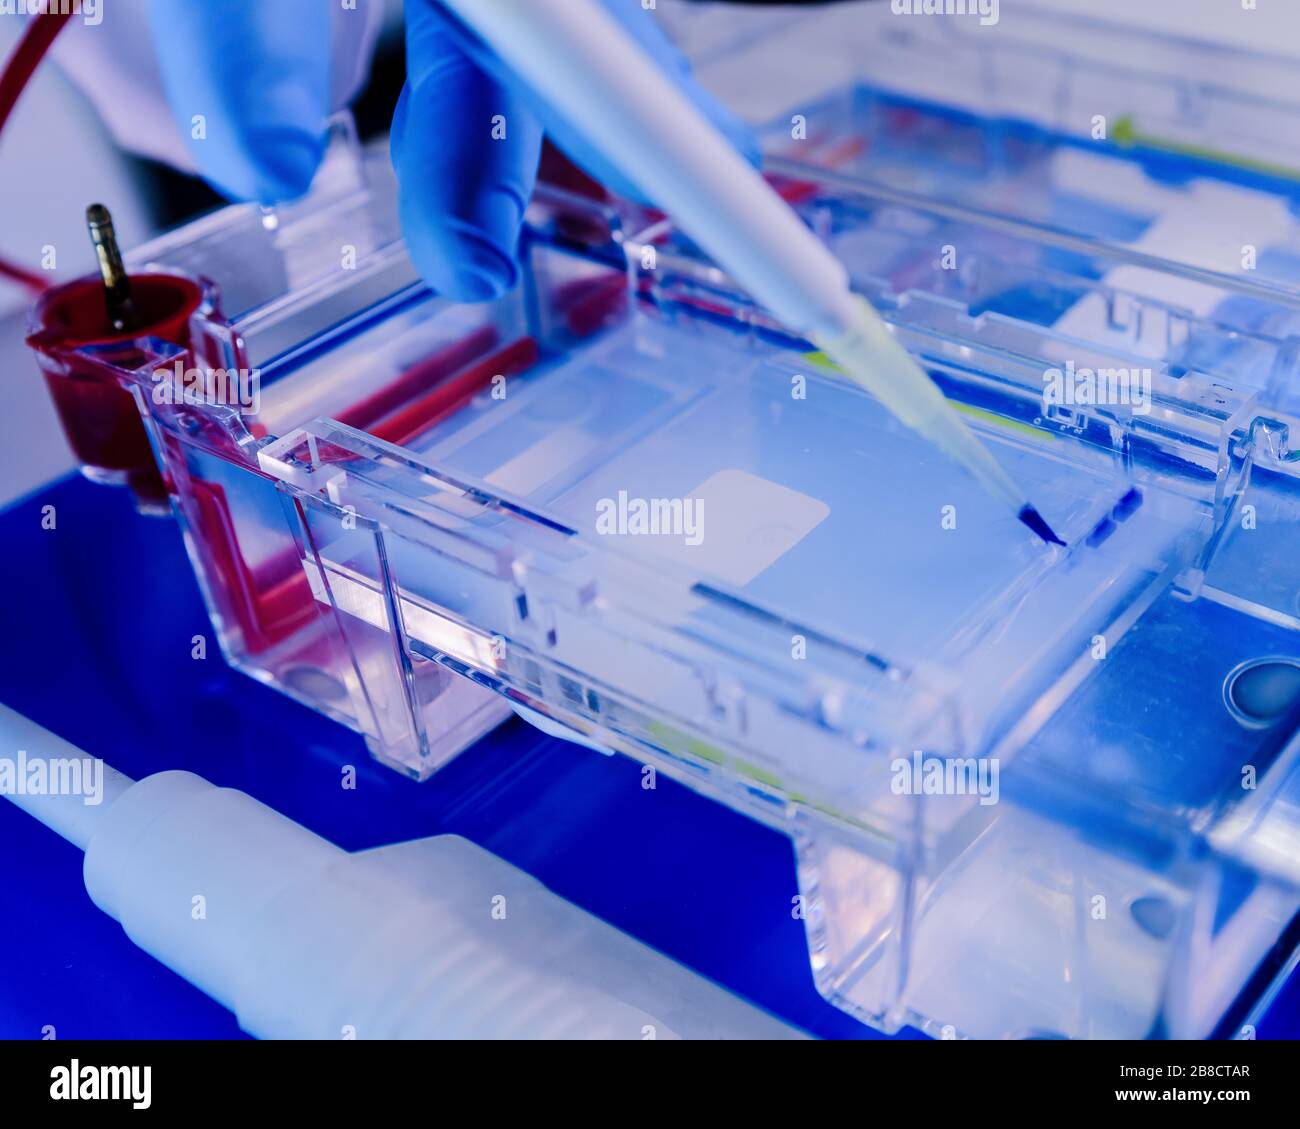 Séparation des protéines sur des gels dans des chambres d'électrophorèse. Concept de la science, du laboratoire et de l'étude des maladies. Coronavirus (COVID-19) dégel de traitement Banque D'Images